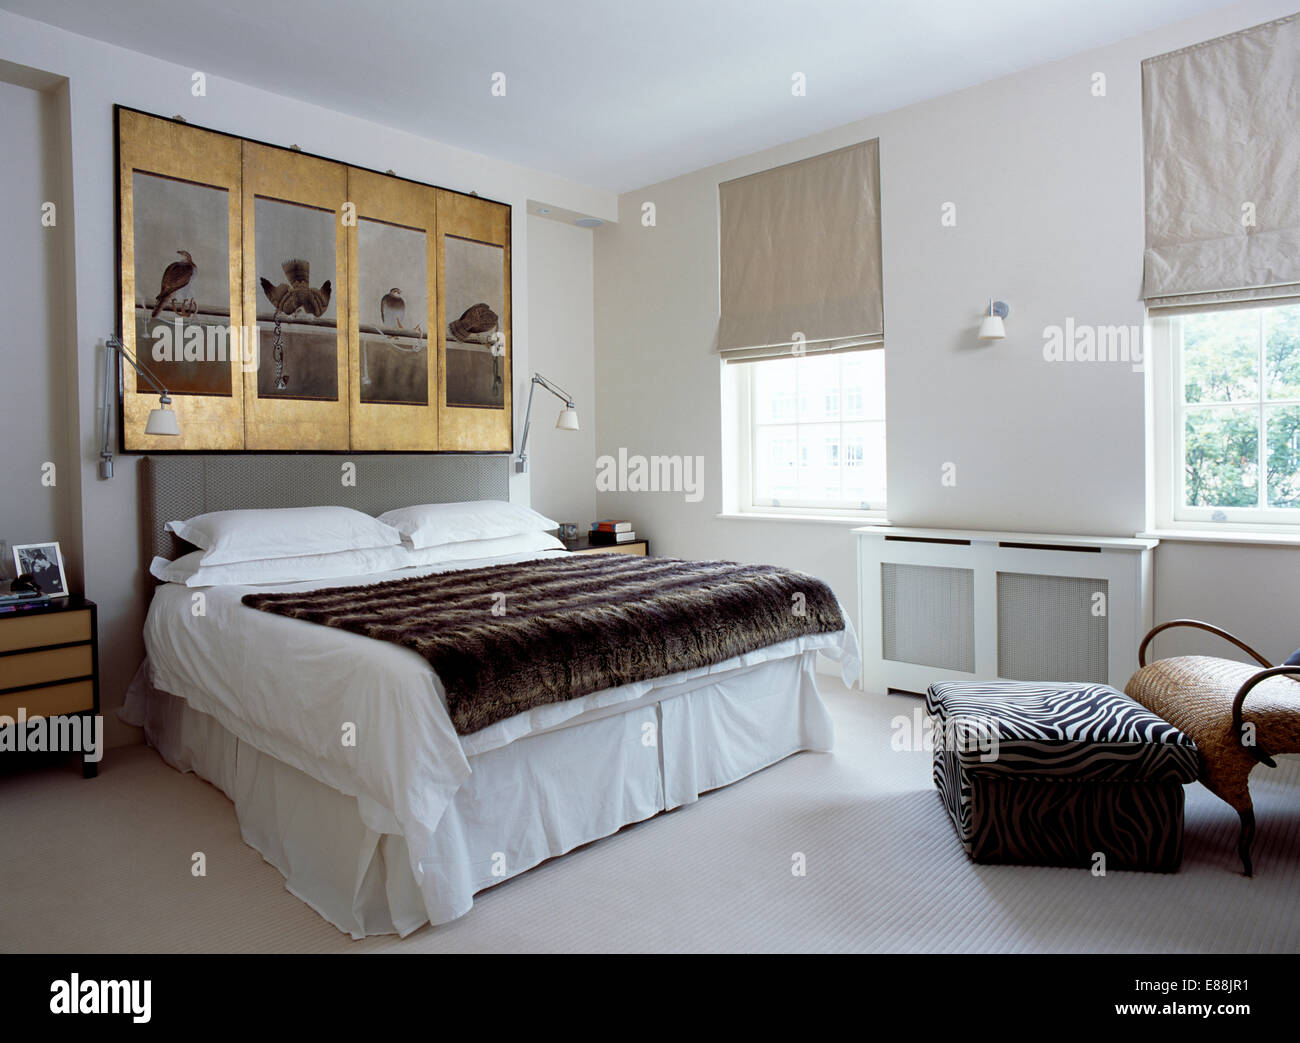 Dorure ancienne encadrée au-dessus de lit avec des panneaux de faux lancer et linge blanc dans une chambre moderne avec abat-jour gris sur windows Banque D'Images